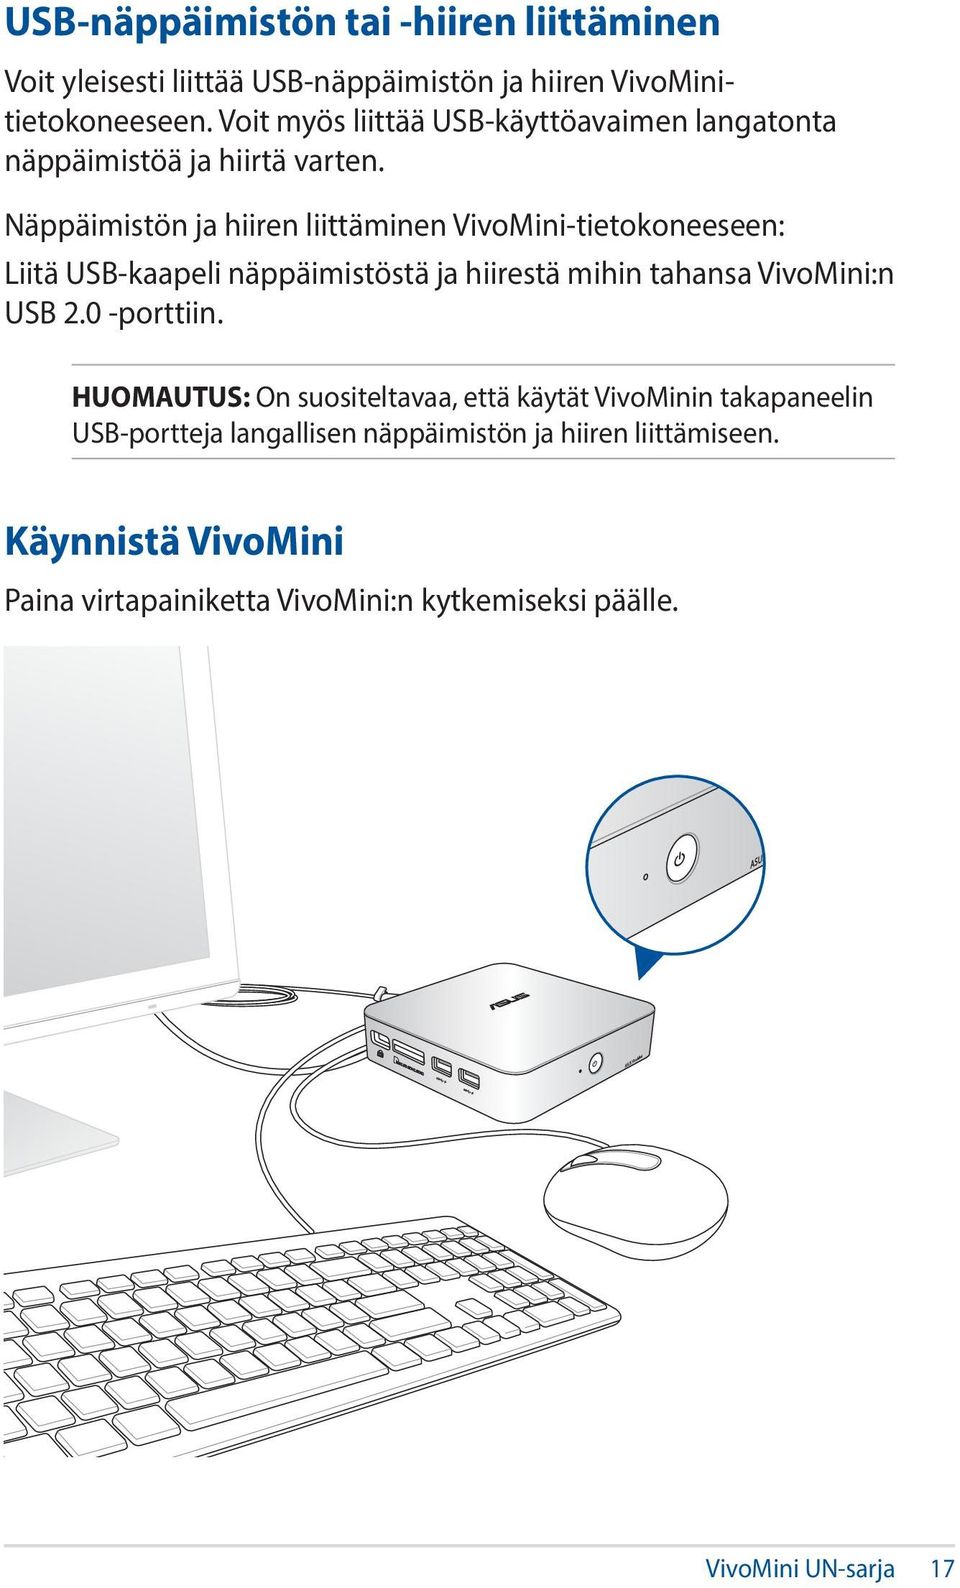 Näppäimistön ja hiiren liittäminen VivoMini-tietokoneeseen: Liitä USB-kaapeli näppäimistöstä ja hiirestä mihin tahansa VivoMini:n USB 2.